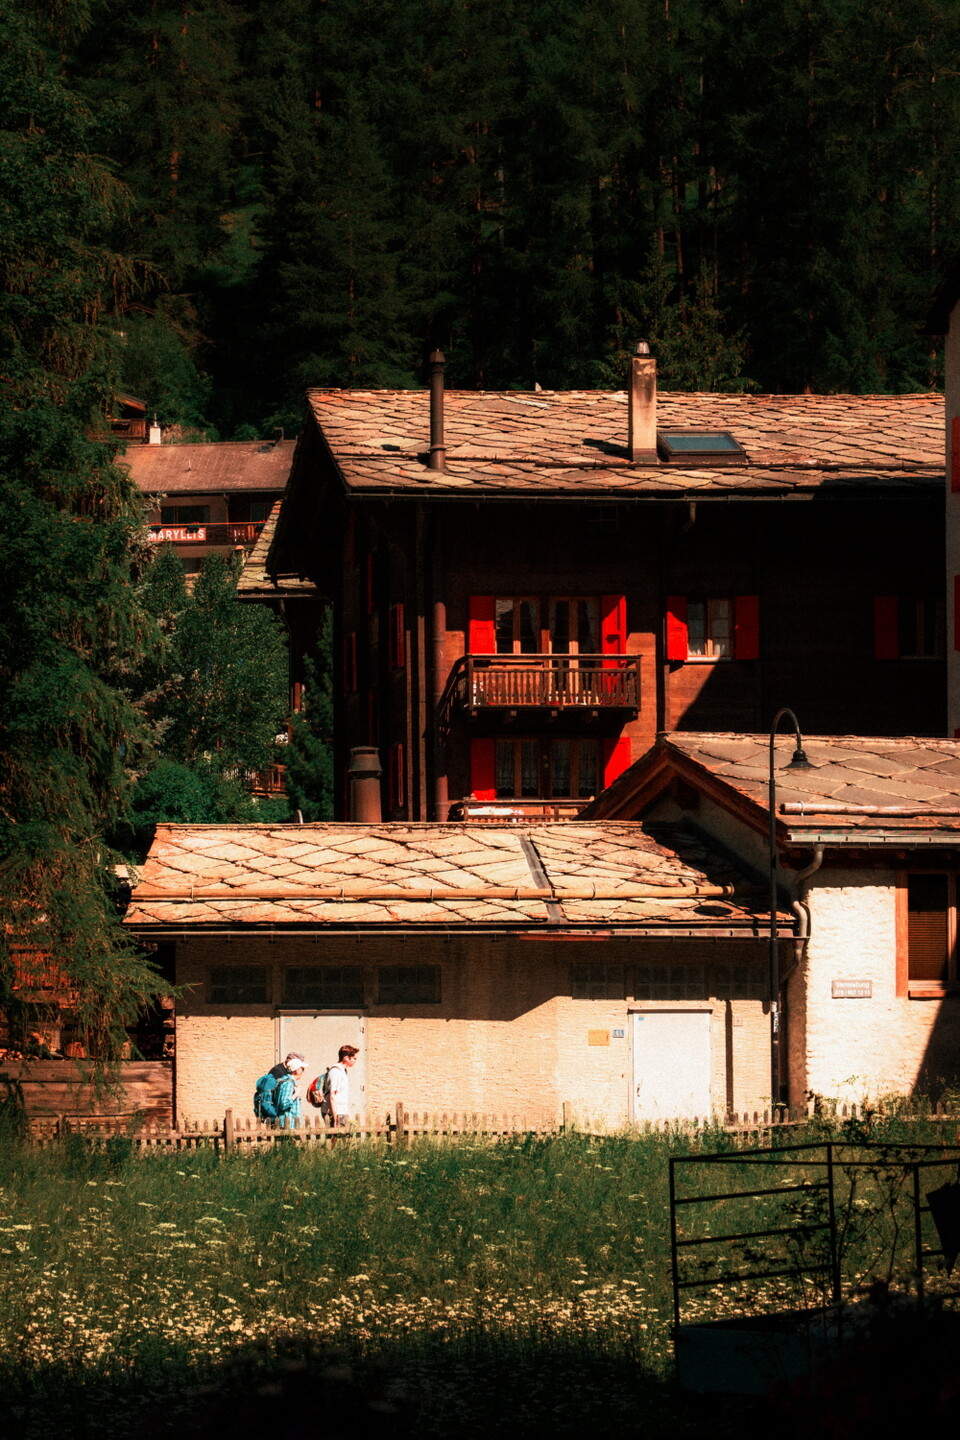 체르마트 시내는 스위스 전통 오두막집 샬레(Châlet)로 가득하다. 햇빛을 받으면 나무 벽의 주황빛이 더 짙어진다